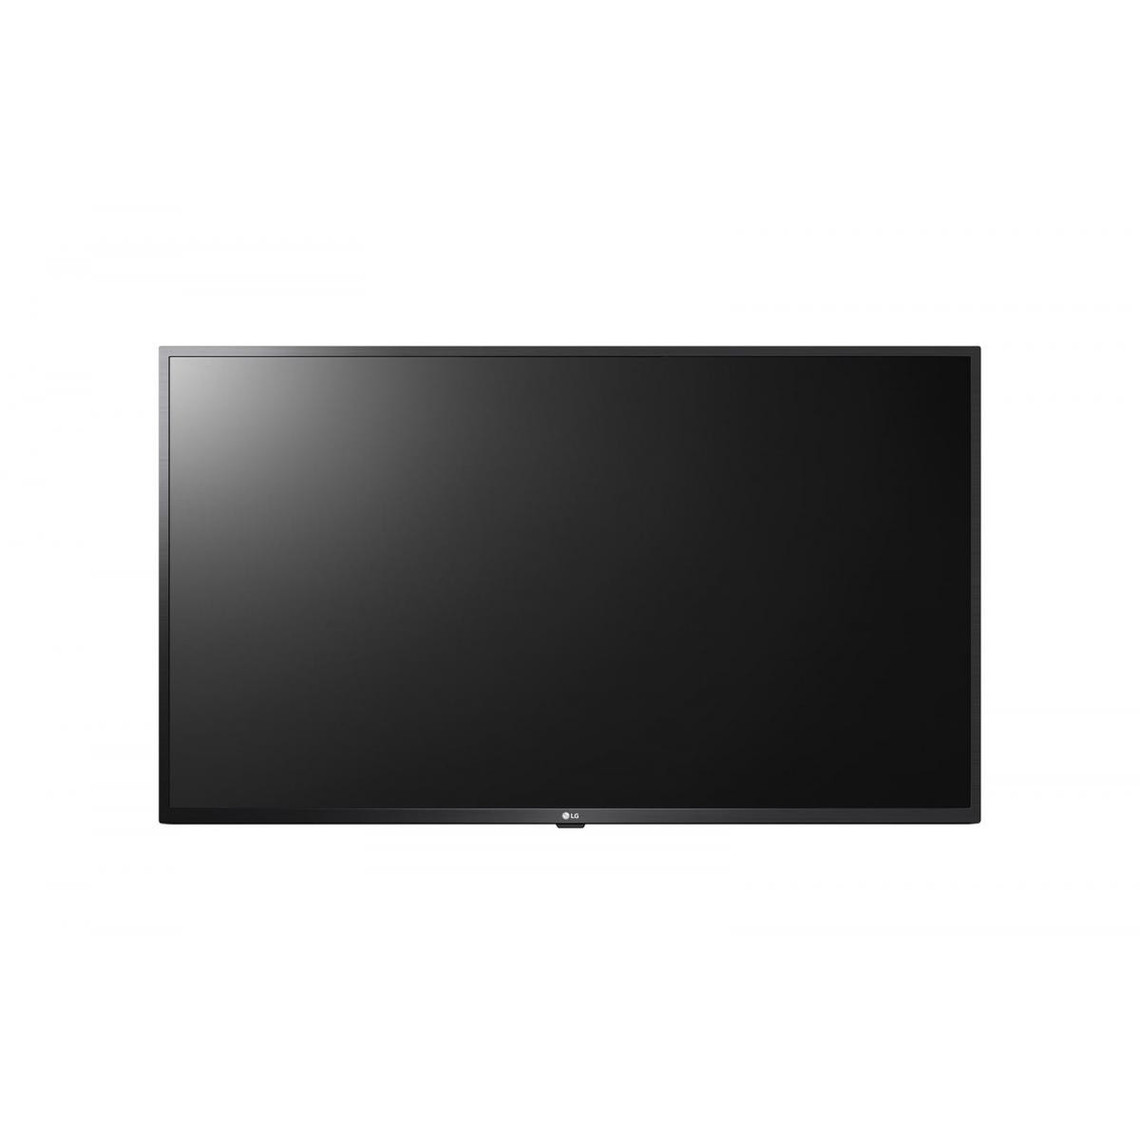 Ecran TV LG 50 Noir LED 55US662H 4k UHD 3840x2160 HPs HDMI, USB 2.0, Bluetooth LG 55US662H9ZC.AEU. Taille de l'écran: 139,7 cm (55'), Résolution de l'écran: 3840 x 2160 pixels, Type HD: 4K UEcran TV LG 50 Noir LED 55US662H 4k UHD 3840x2160 HPs HDMI, USB 2.0, Bluetooth